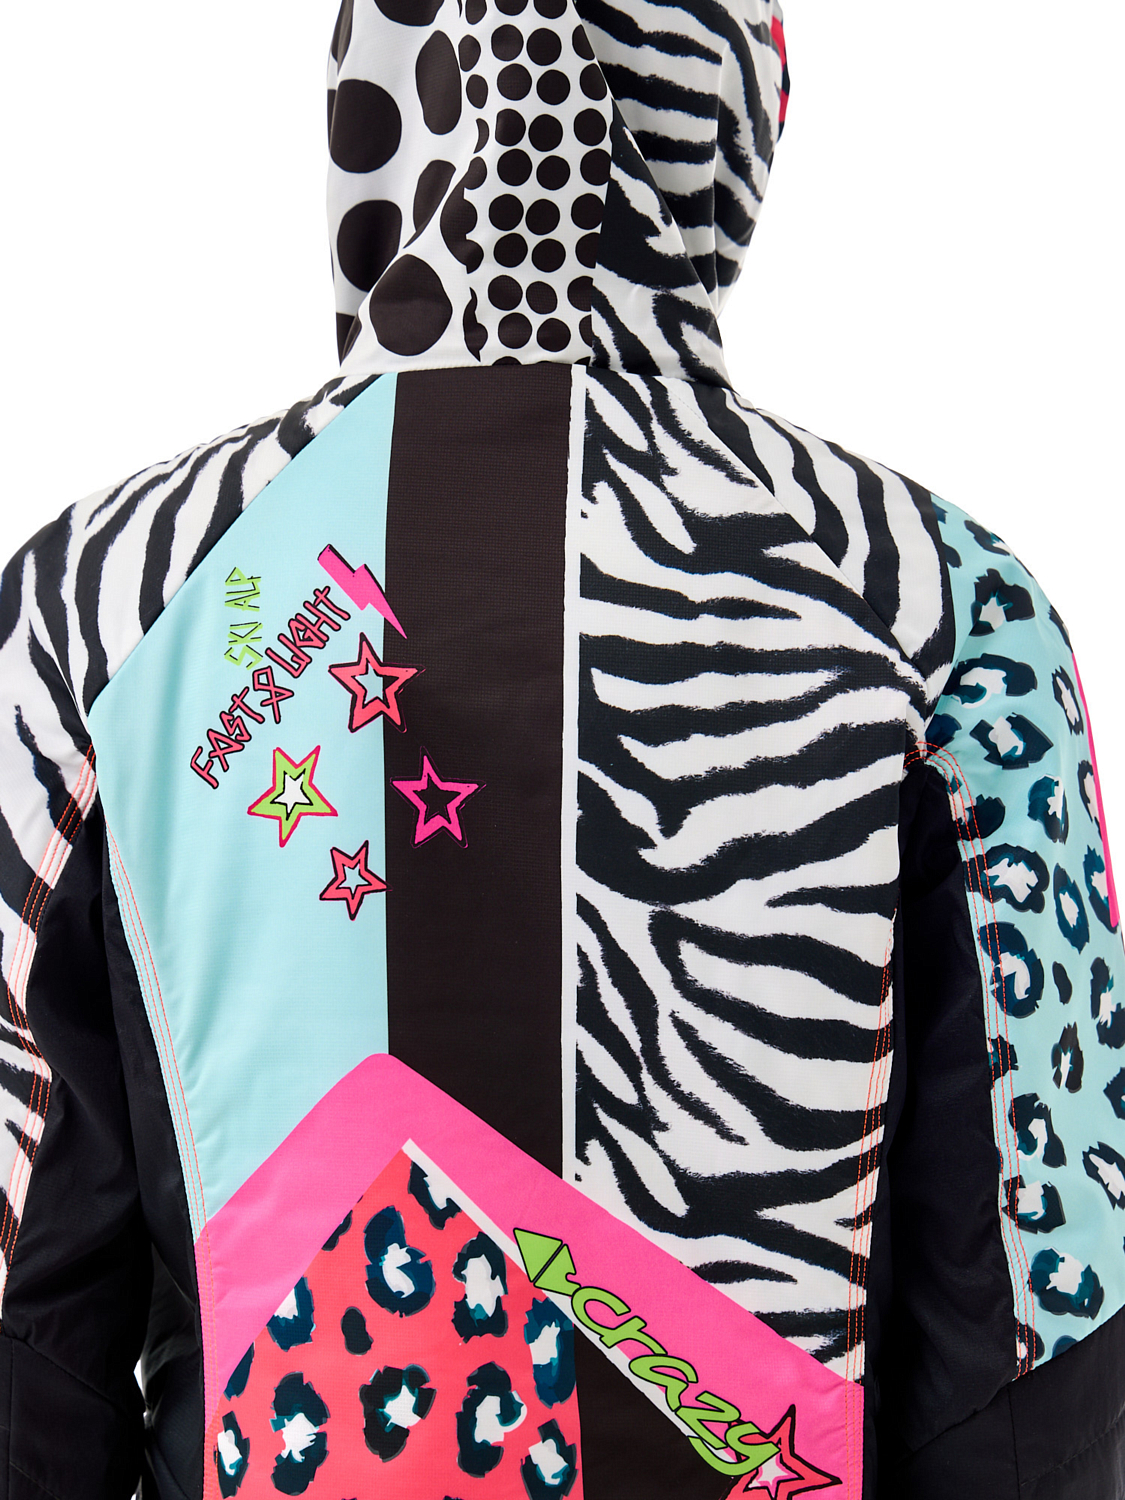 Куртка Crazy Idea Oxygen Black Zebra